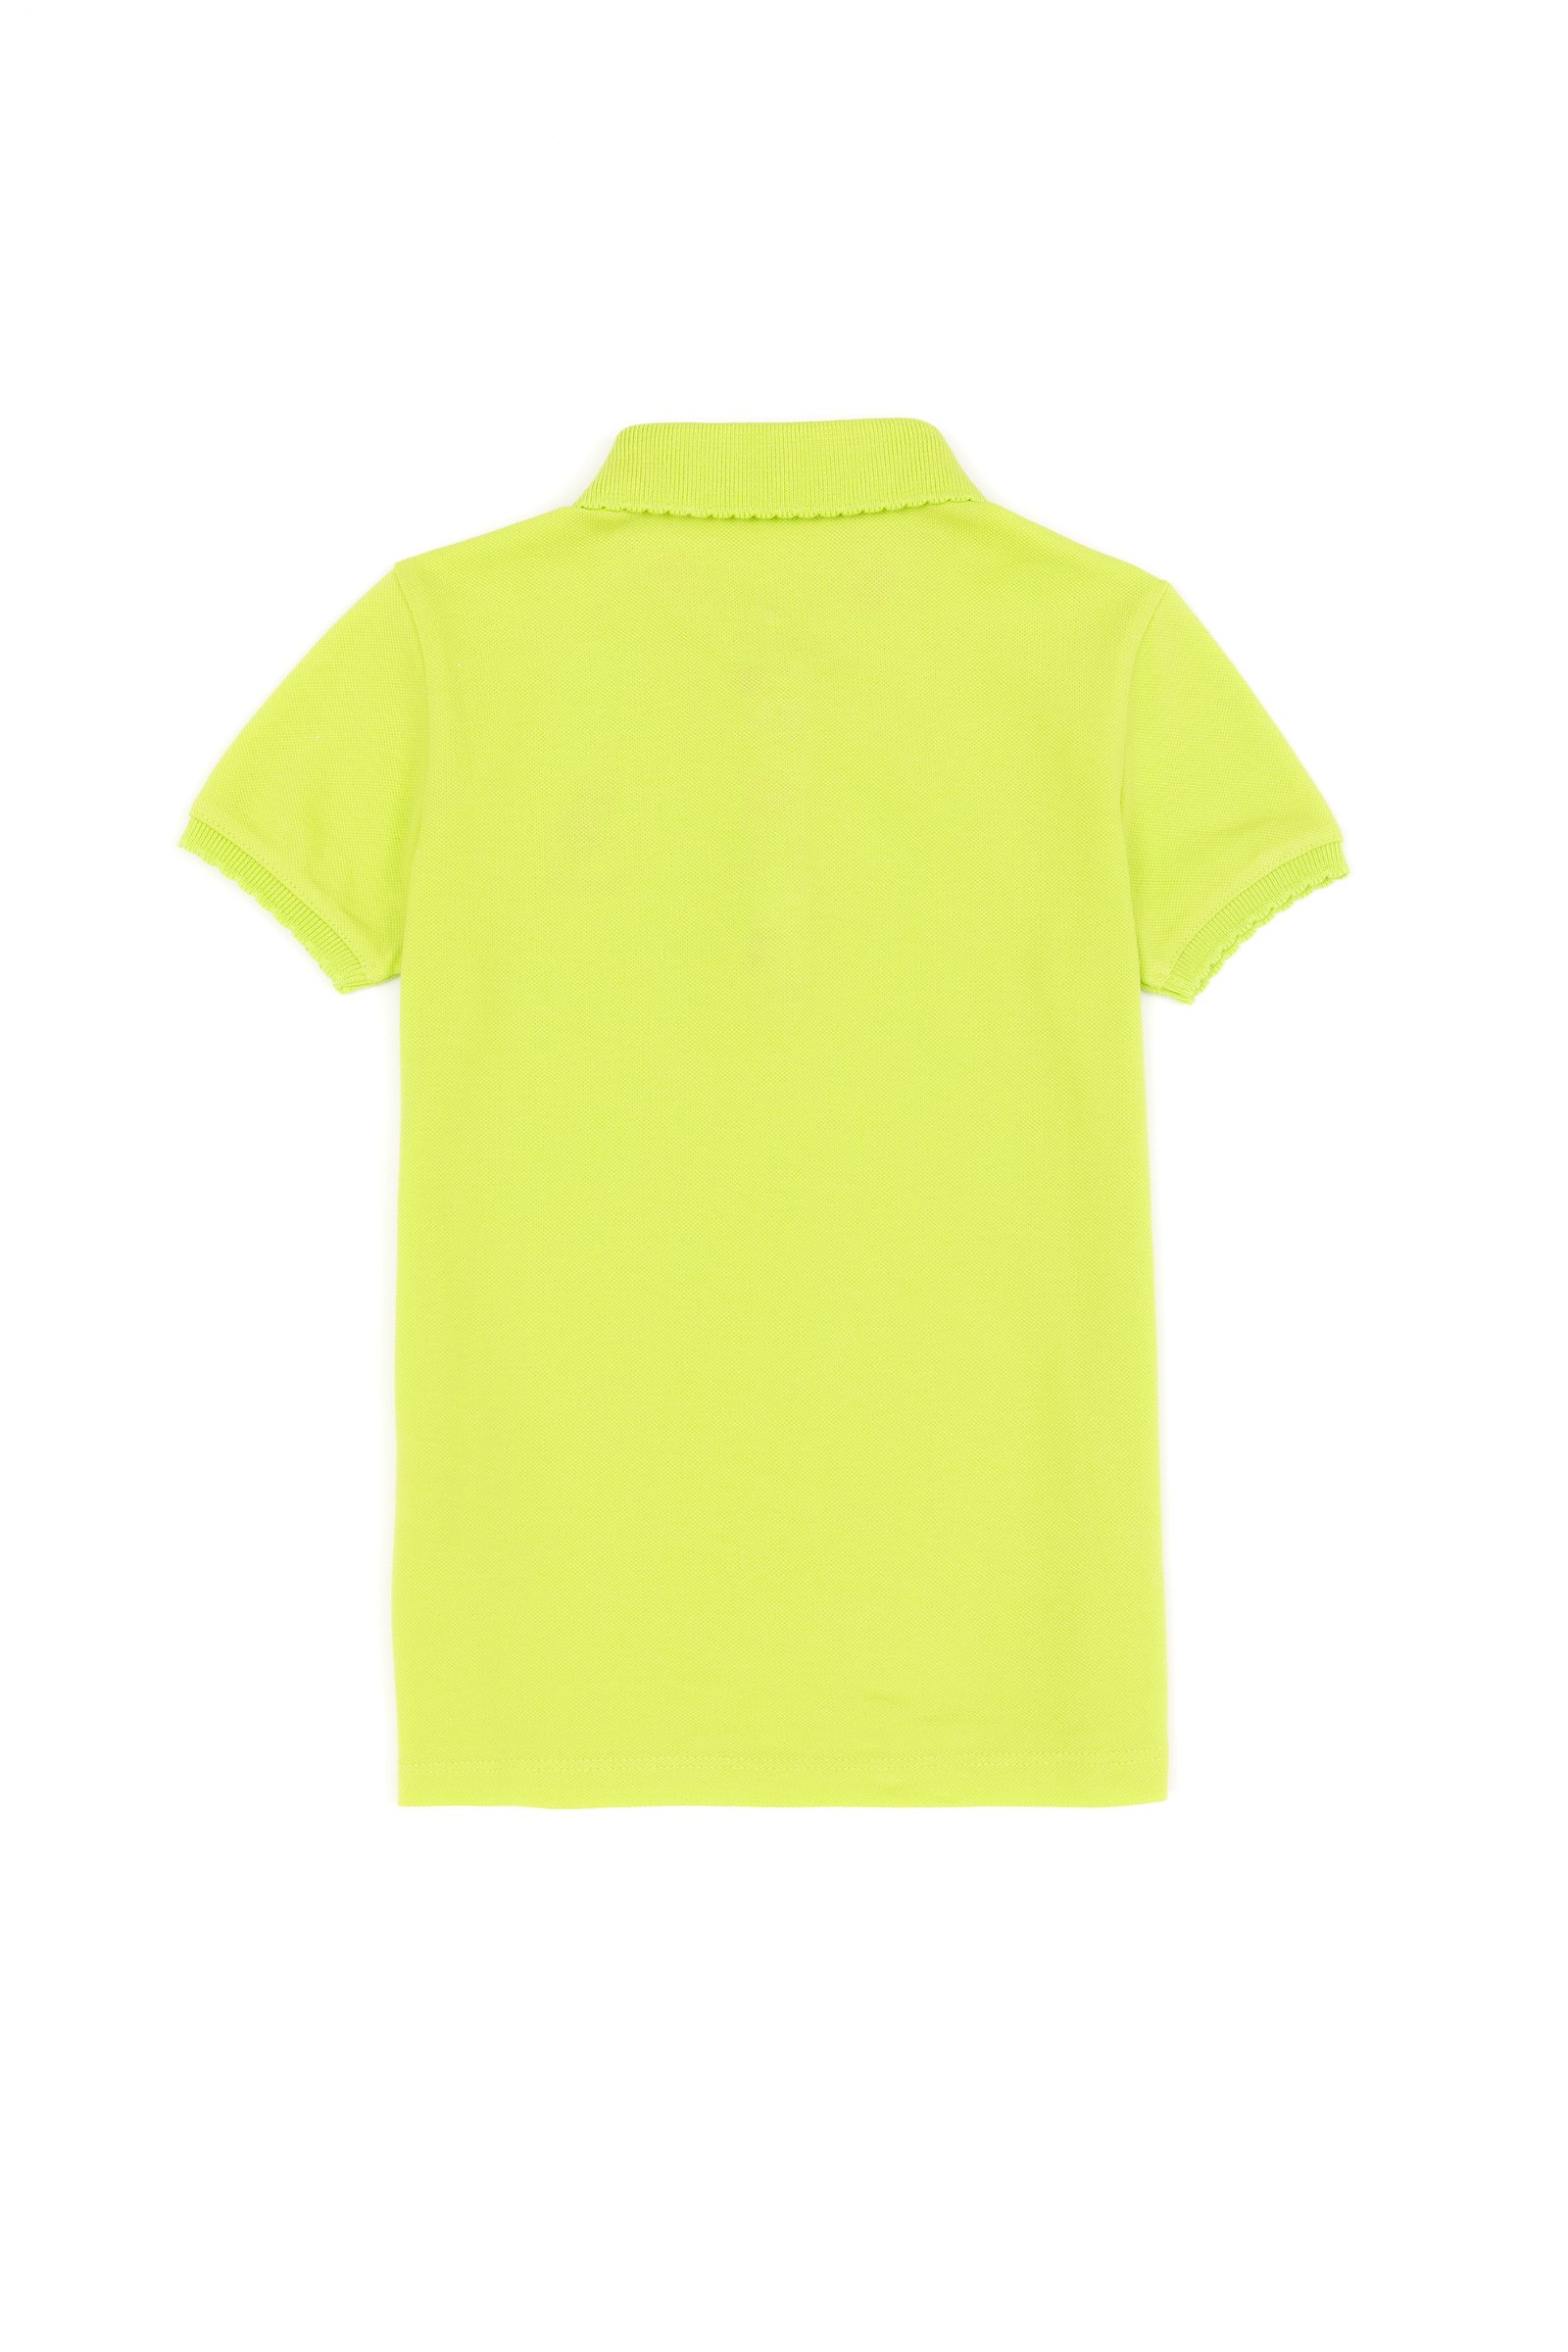 تی شرت  سبز پسته ای  استاندارد فیت  دخترانه یو اس پولو